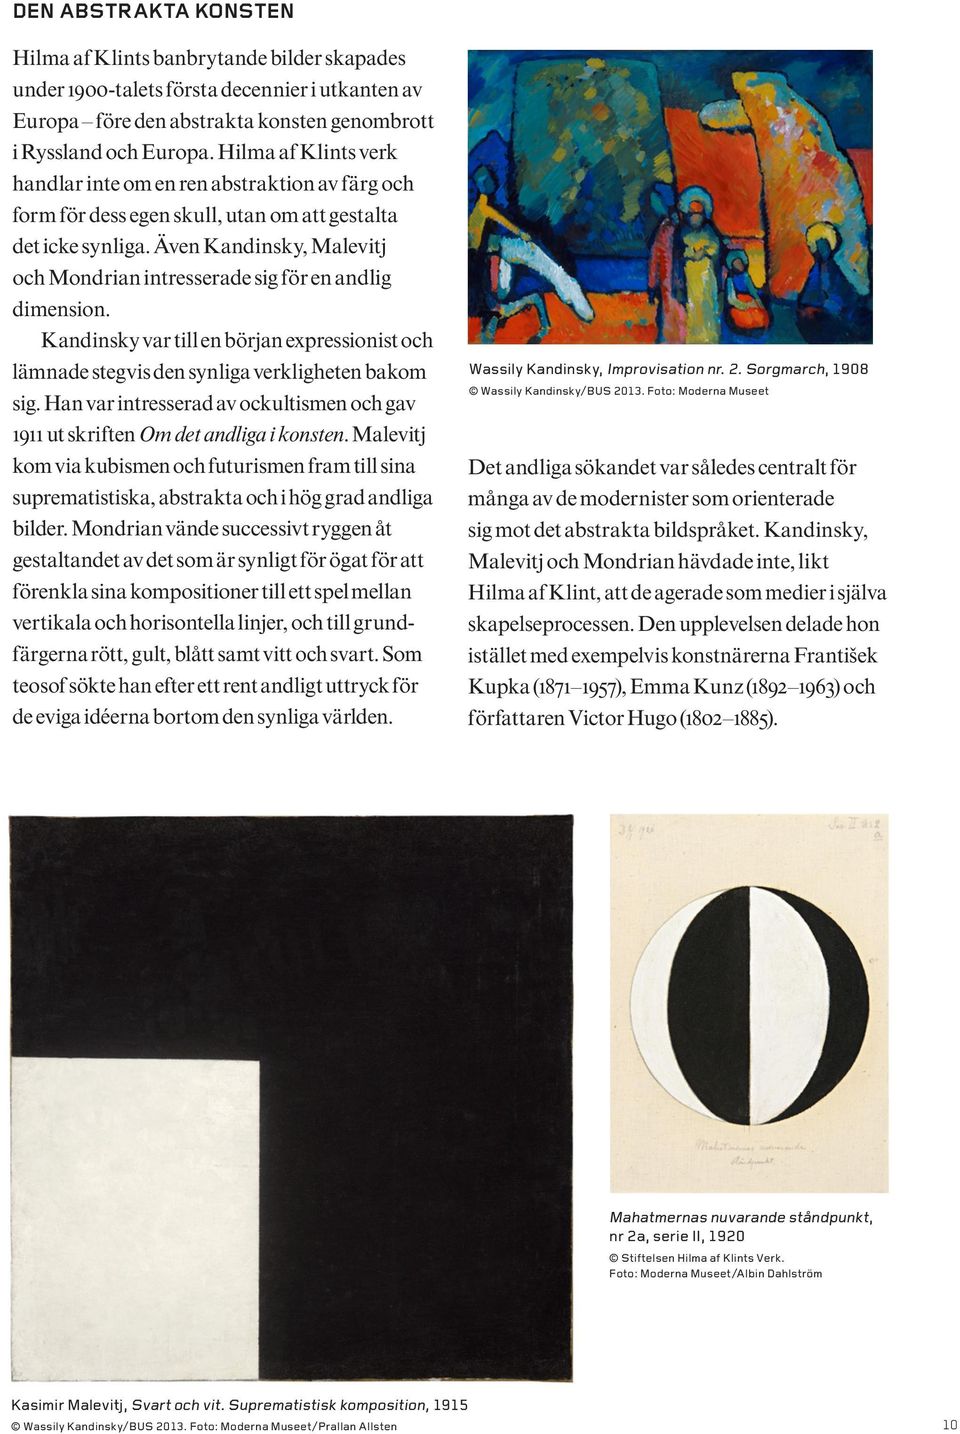 Även Kandinsky, Malevitj och Mondrian intresserade sig för en andlig dimension. Kandinsky var till en början expressionist och lämnade stegvis den synliga verkligheten bakom sig.